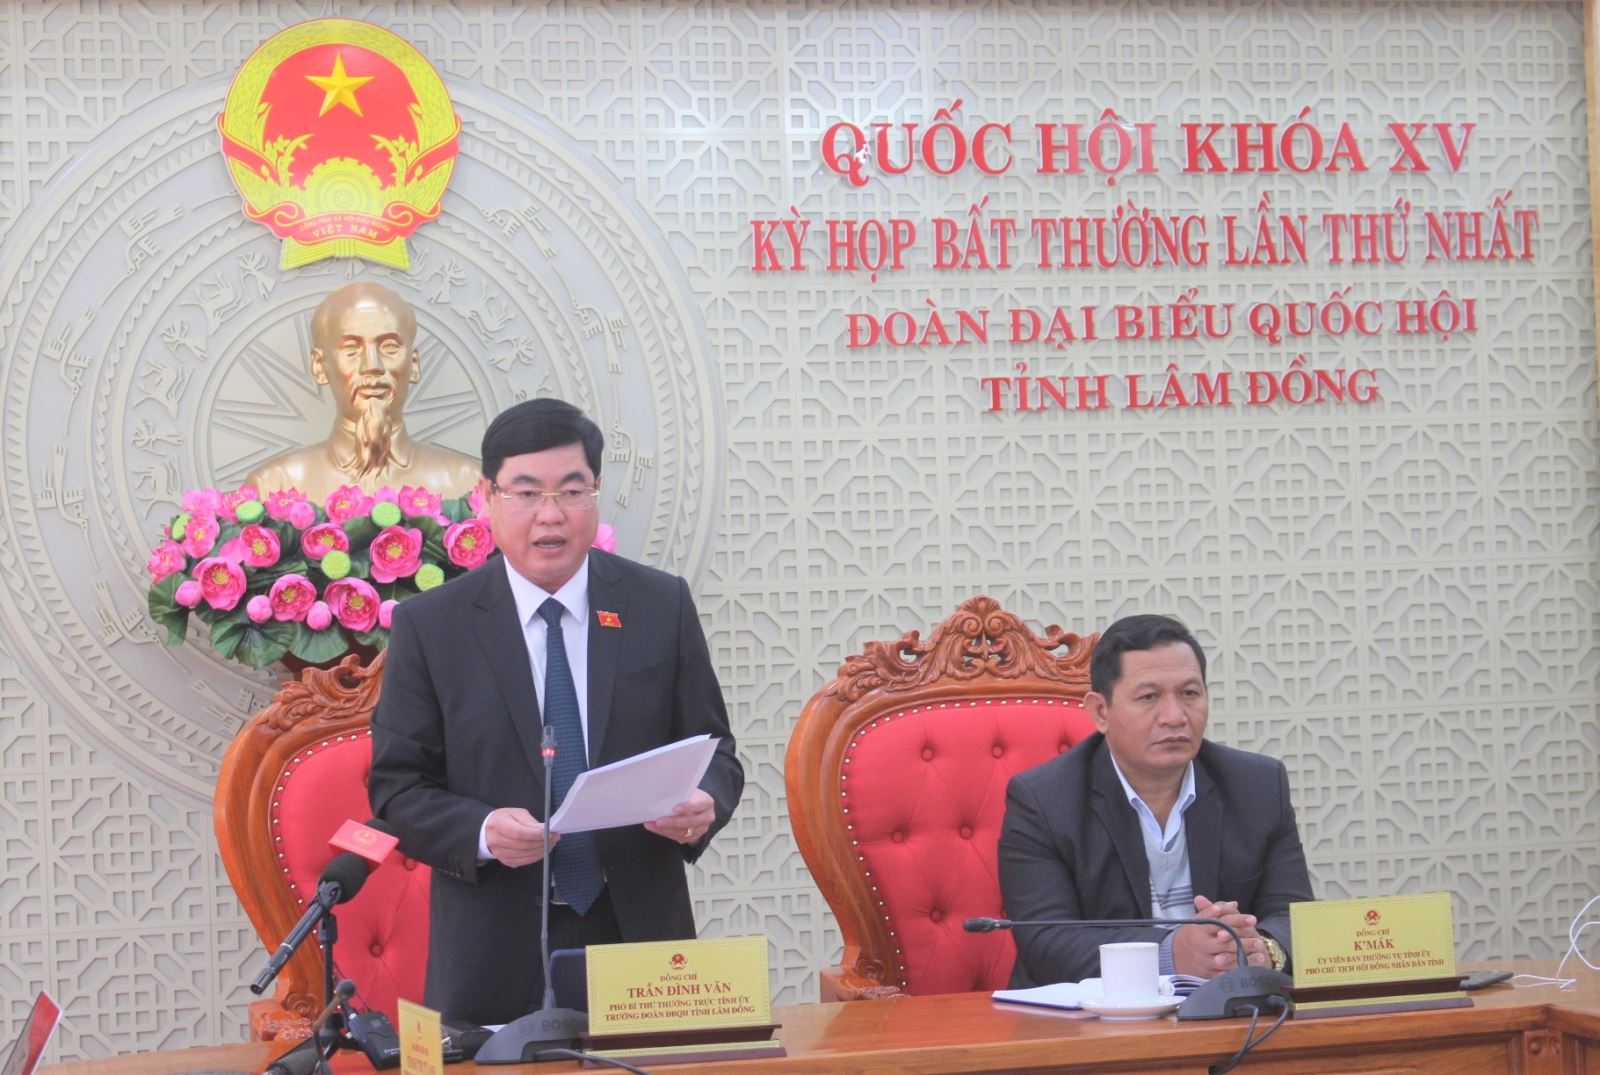 Đại biểu Trần Đình Văn tham gia phát biểu trực tuyến từ điểm cầu Lâm Đồng